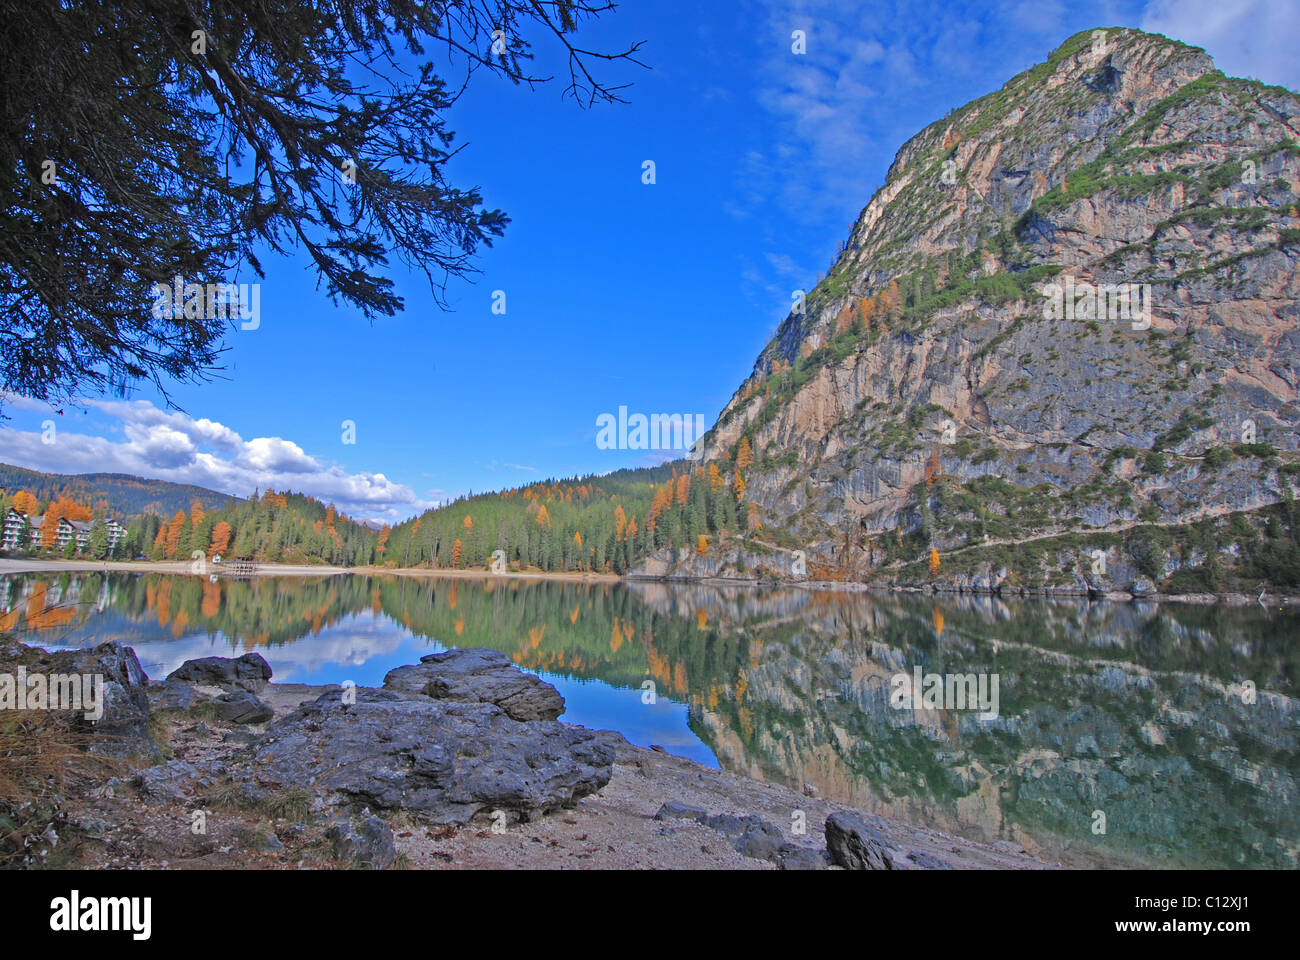 Pragser Wildsee, Lago die braies, Alto Adige, Italy Stock Photo